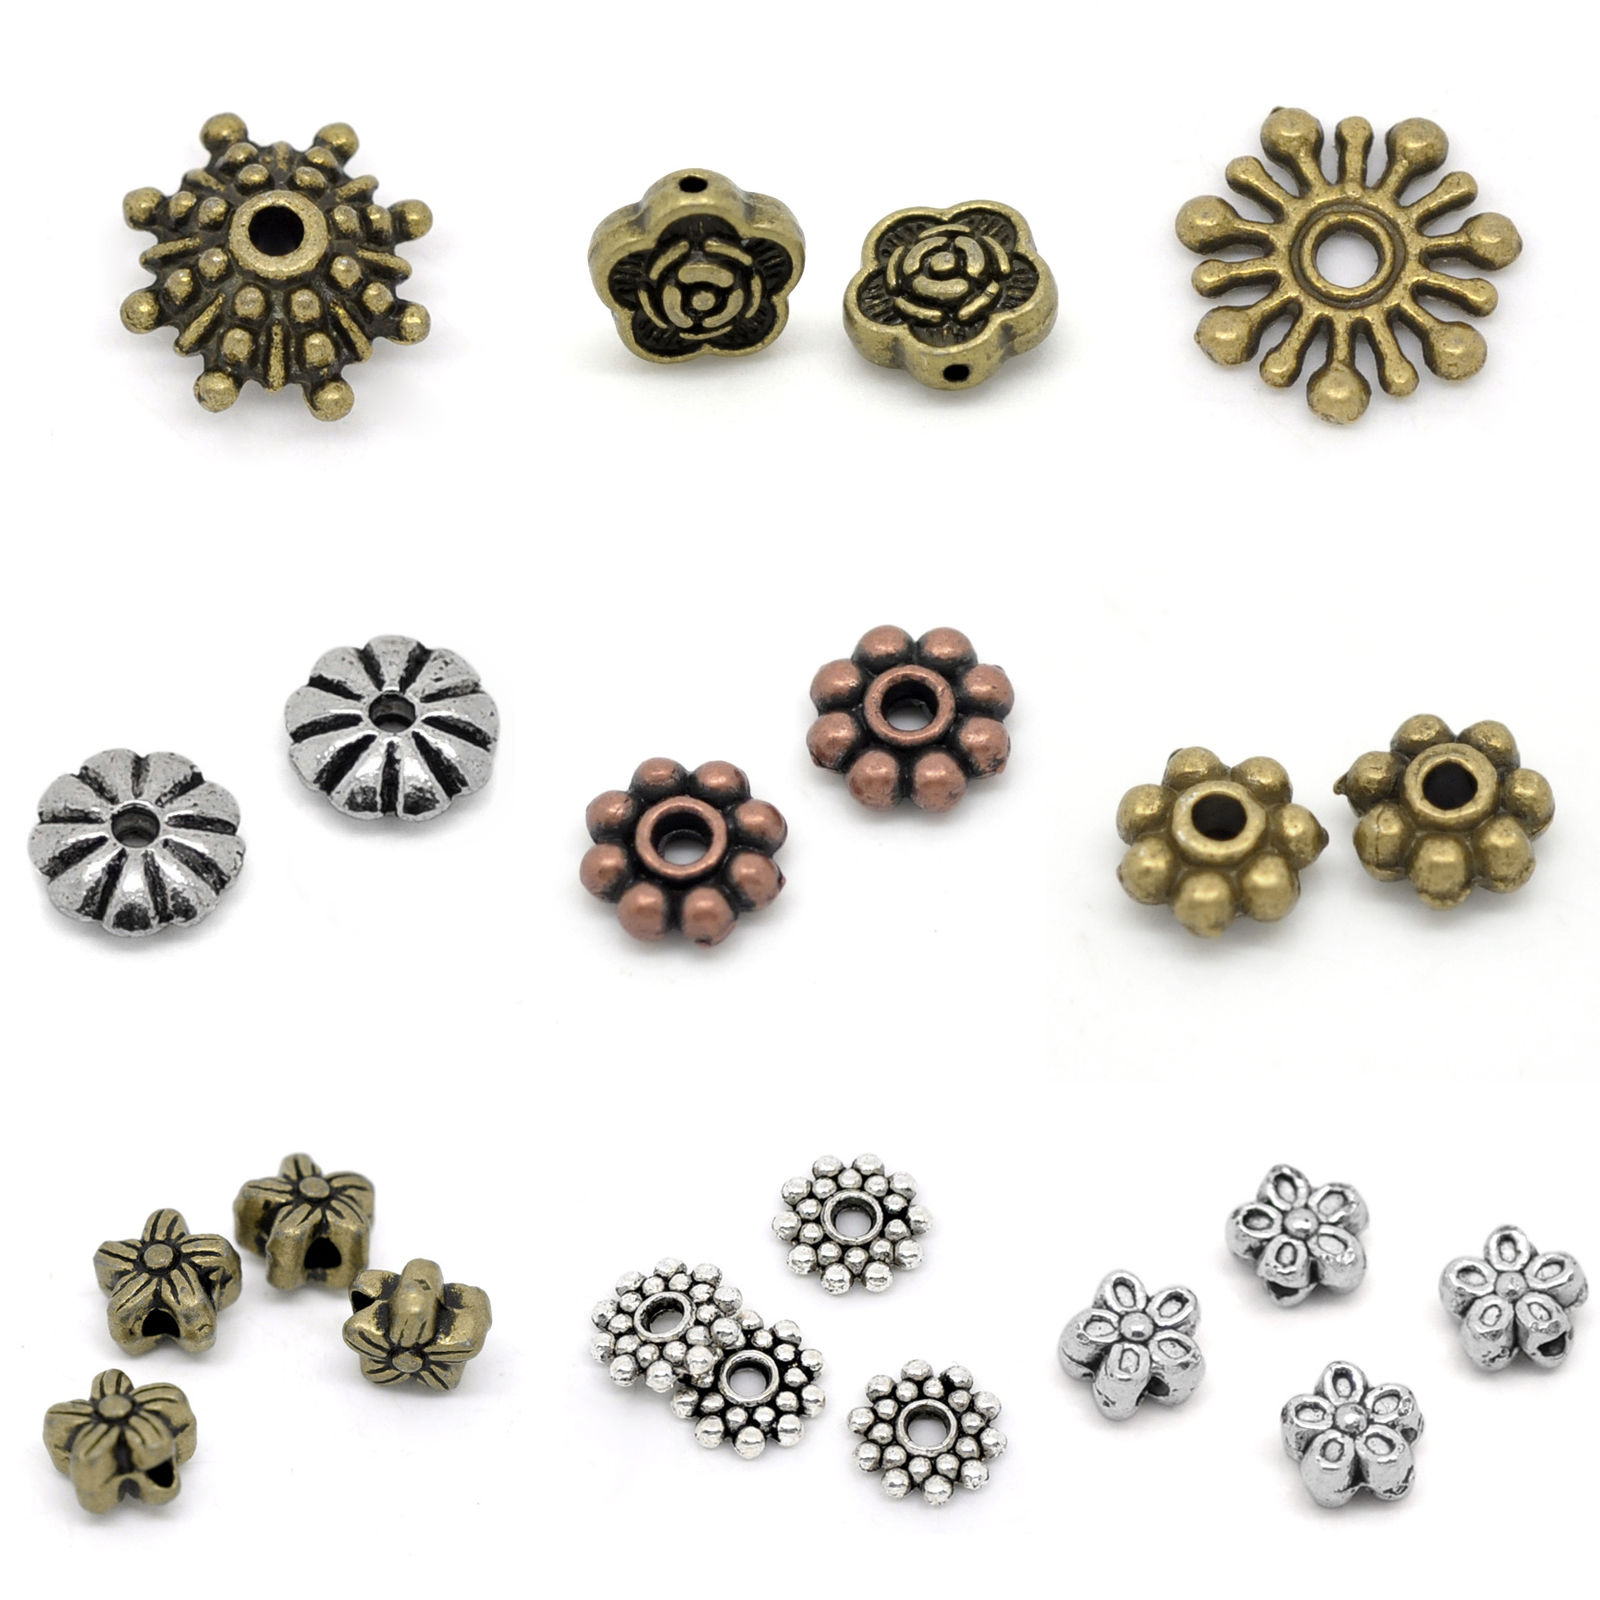 Bild von Zinklegierung Spacer Zwischenperlen Blumen Antik Silber ca. 6mm x 6mm - 7mm x 7mm, Loch:ca. 1.3mm, 50 Stück